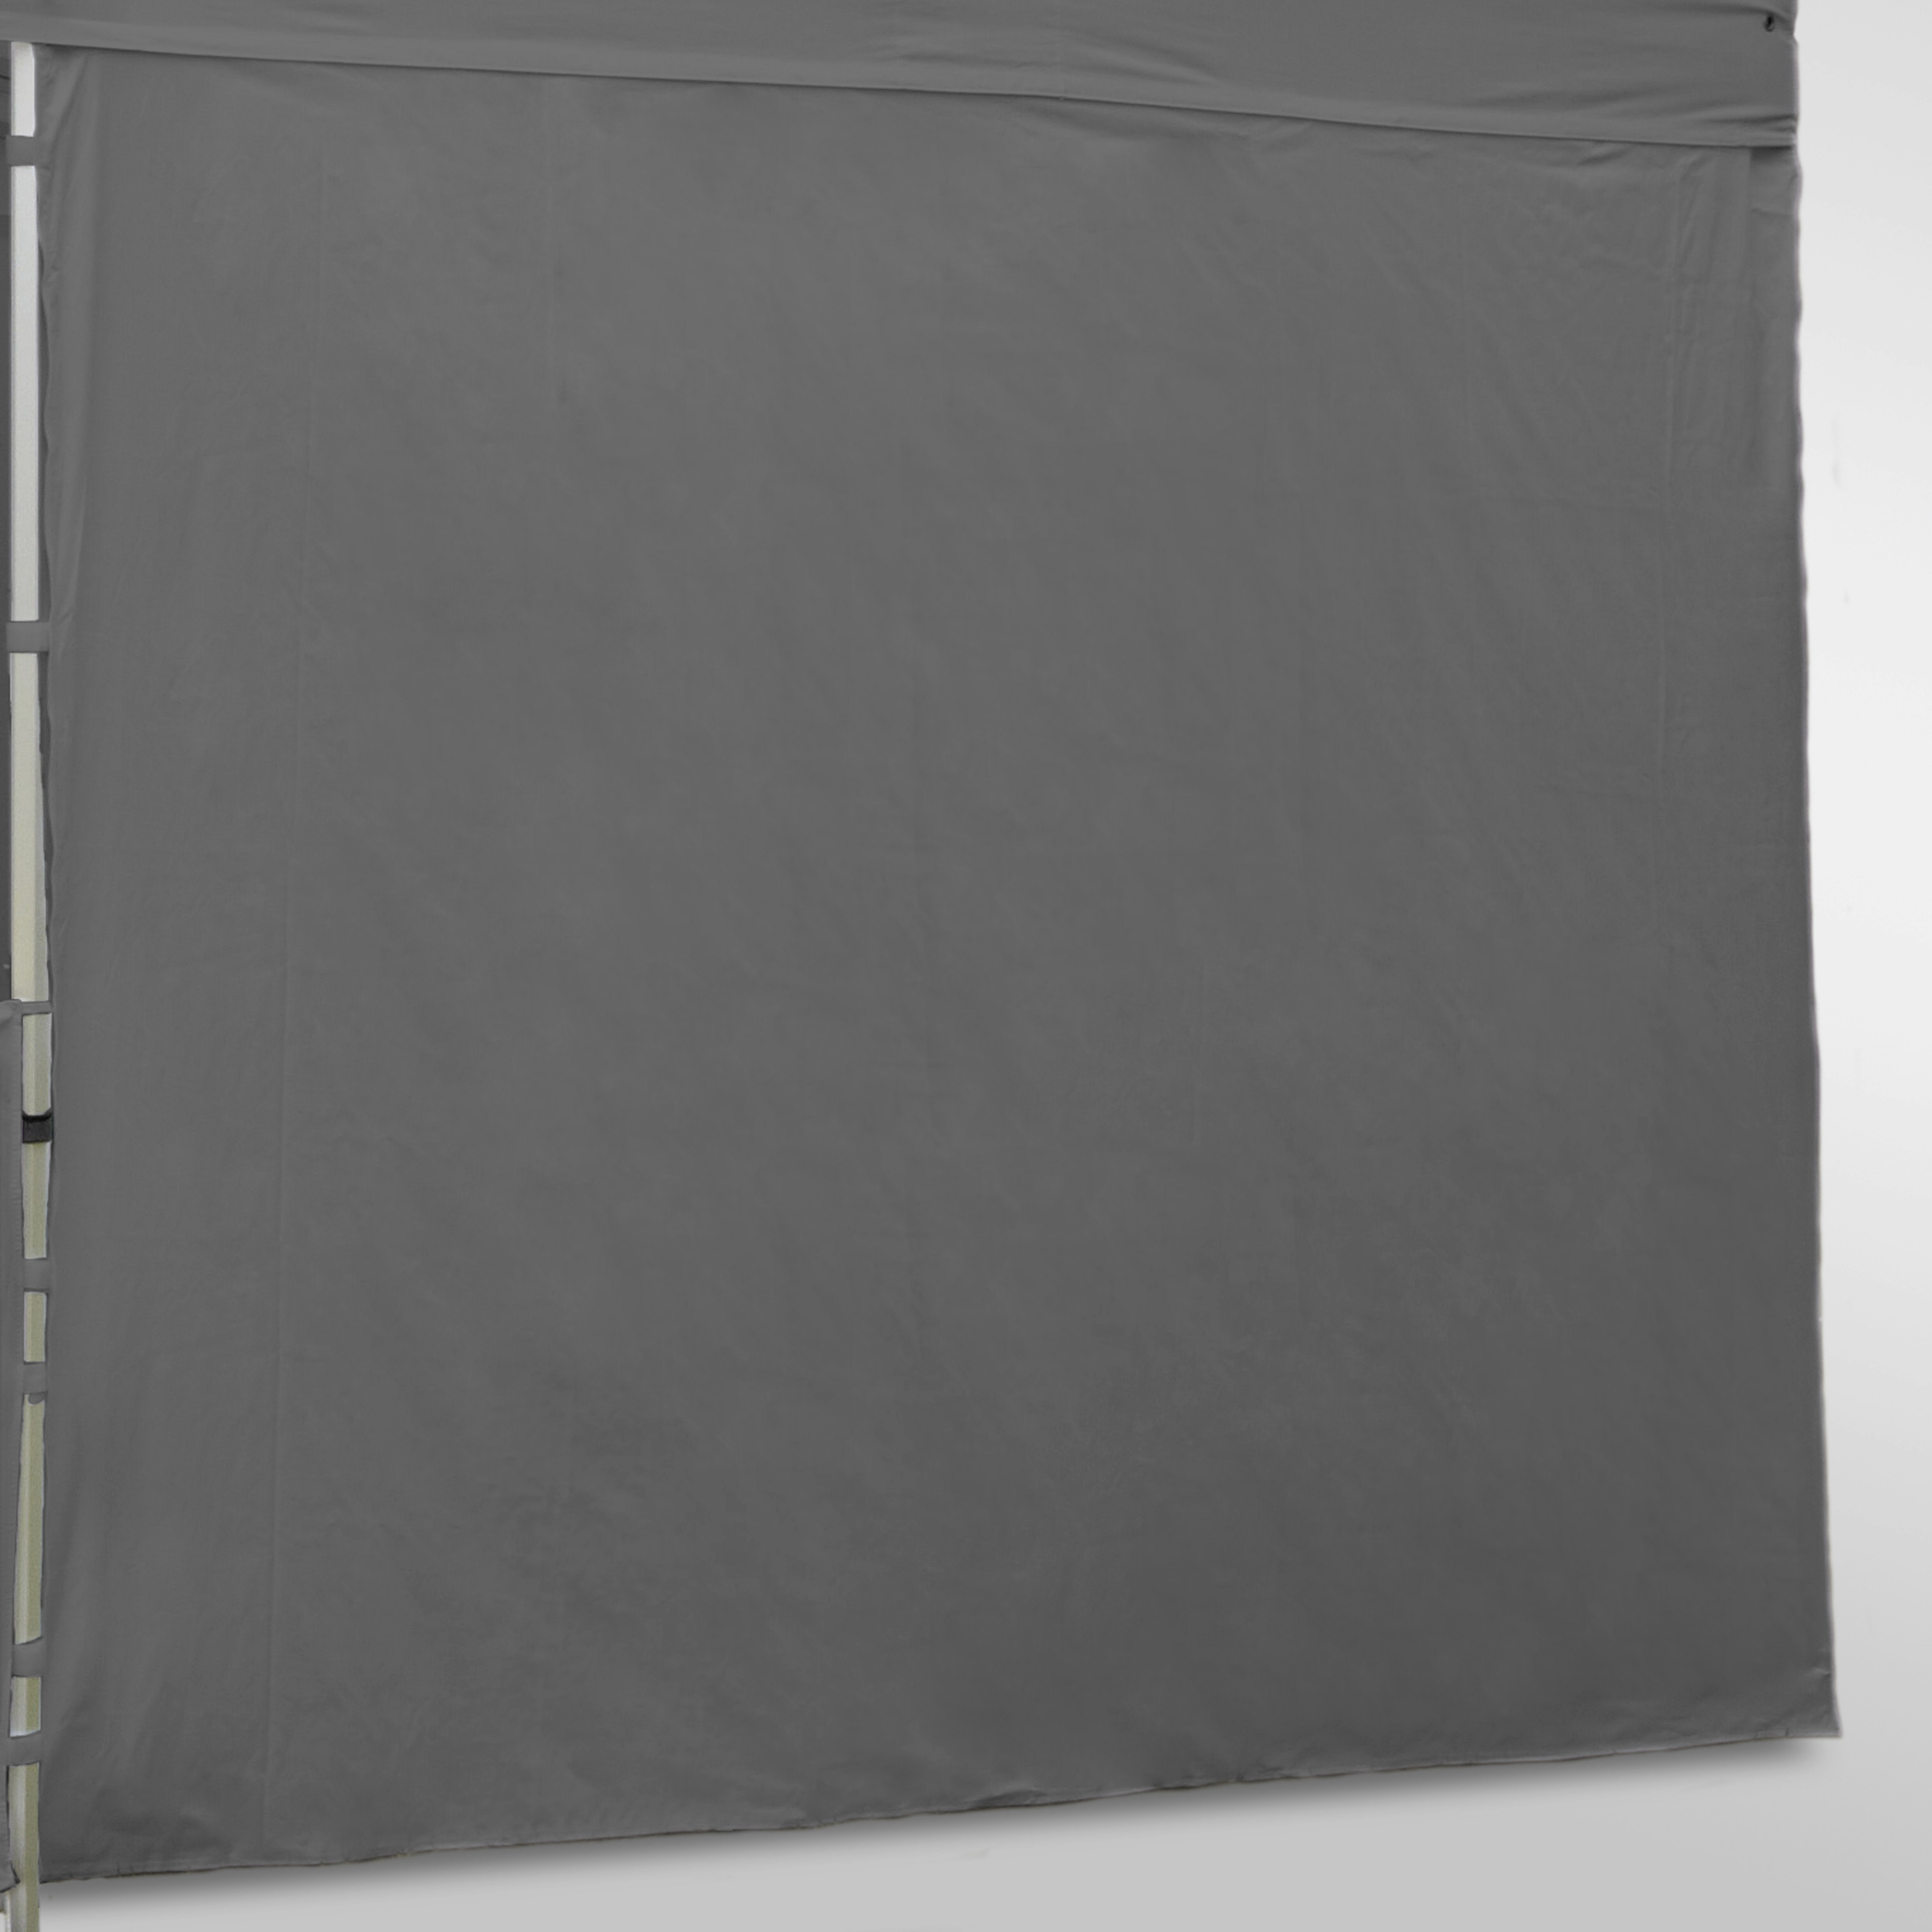 Plateau de service PVC gris 46cm x 36cm